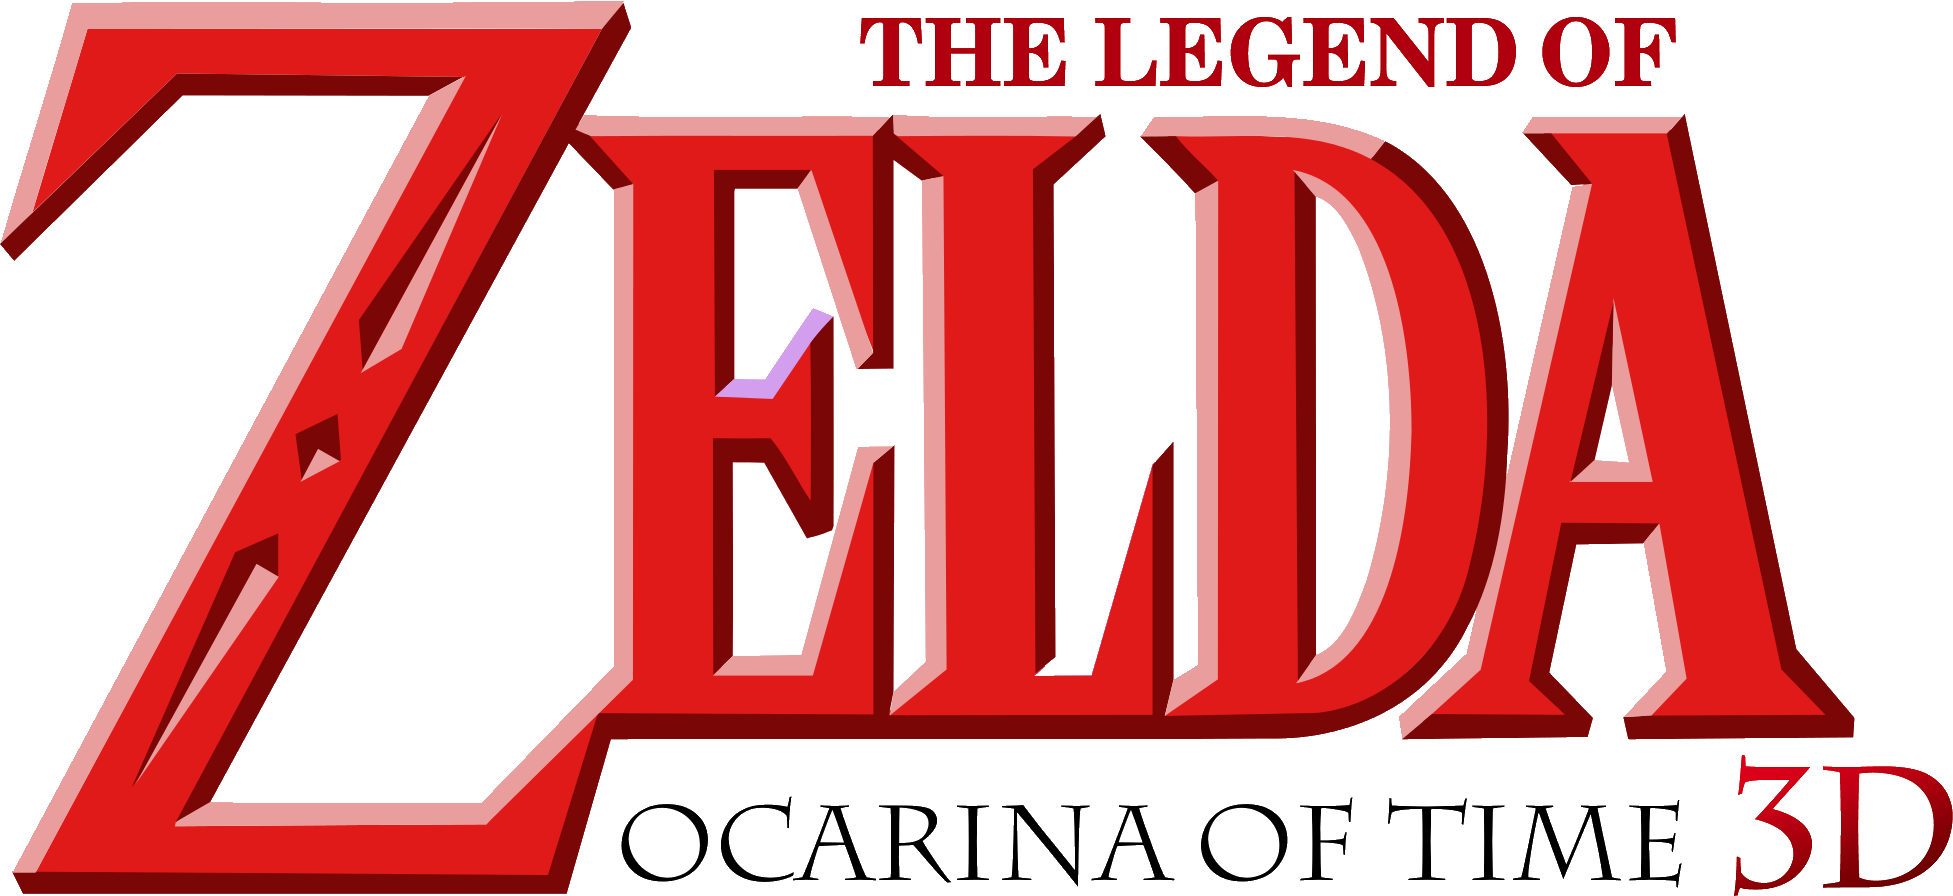 The Legend Of Zelda Ocarina Of Time 3d - Legend Of Zelda Logo Png (1953x896), Png Download